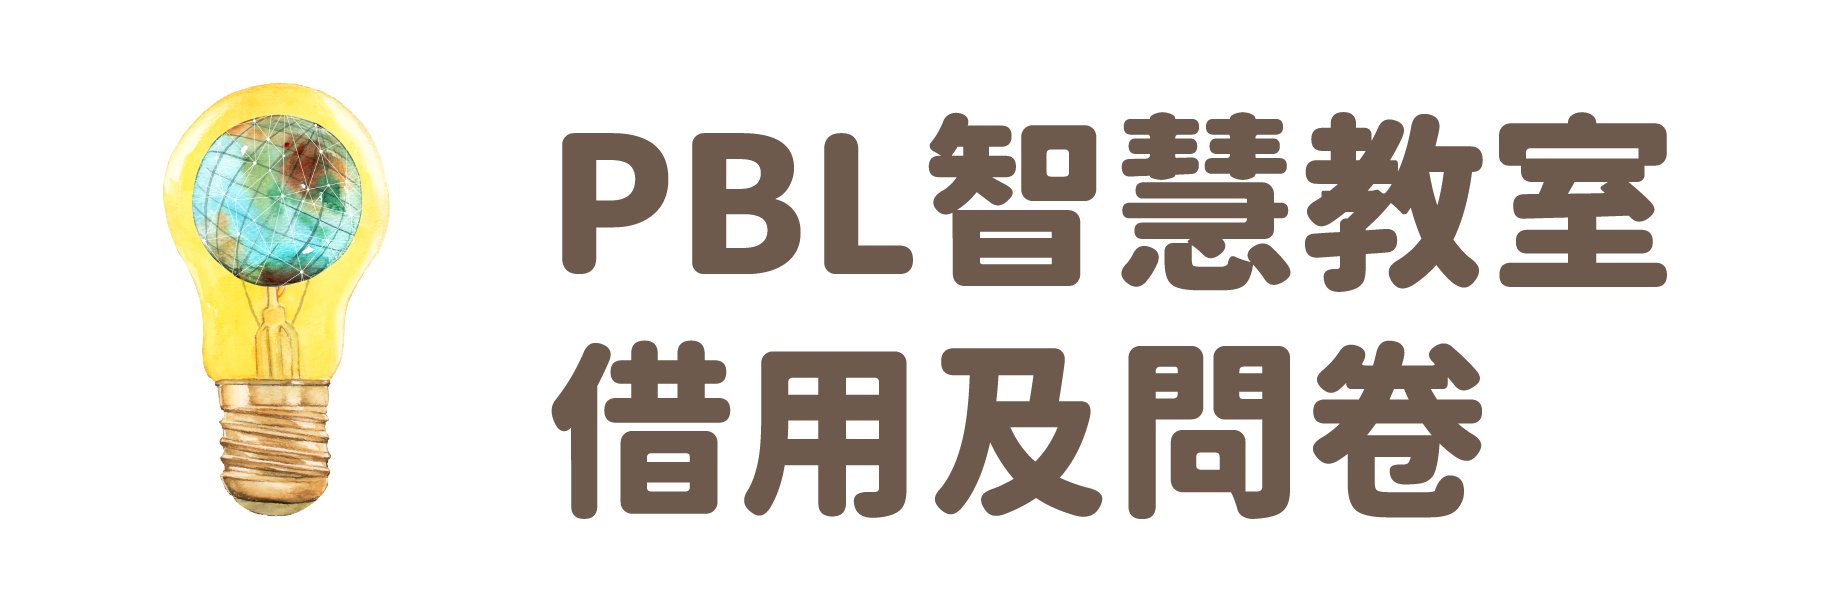 PBL